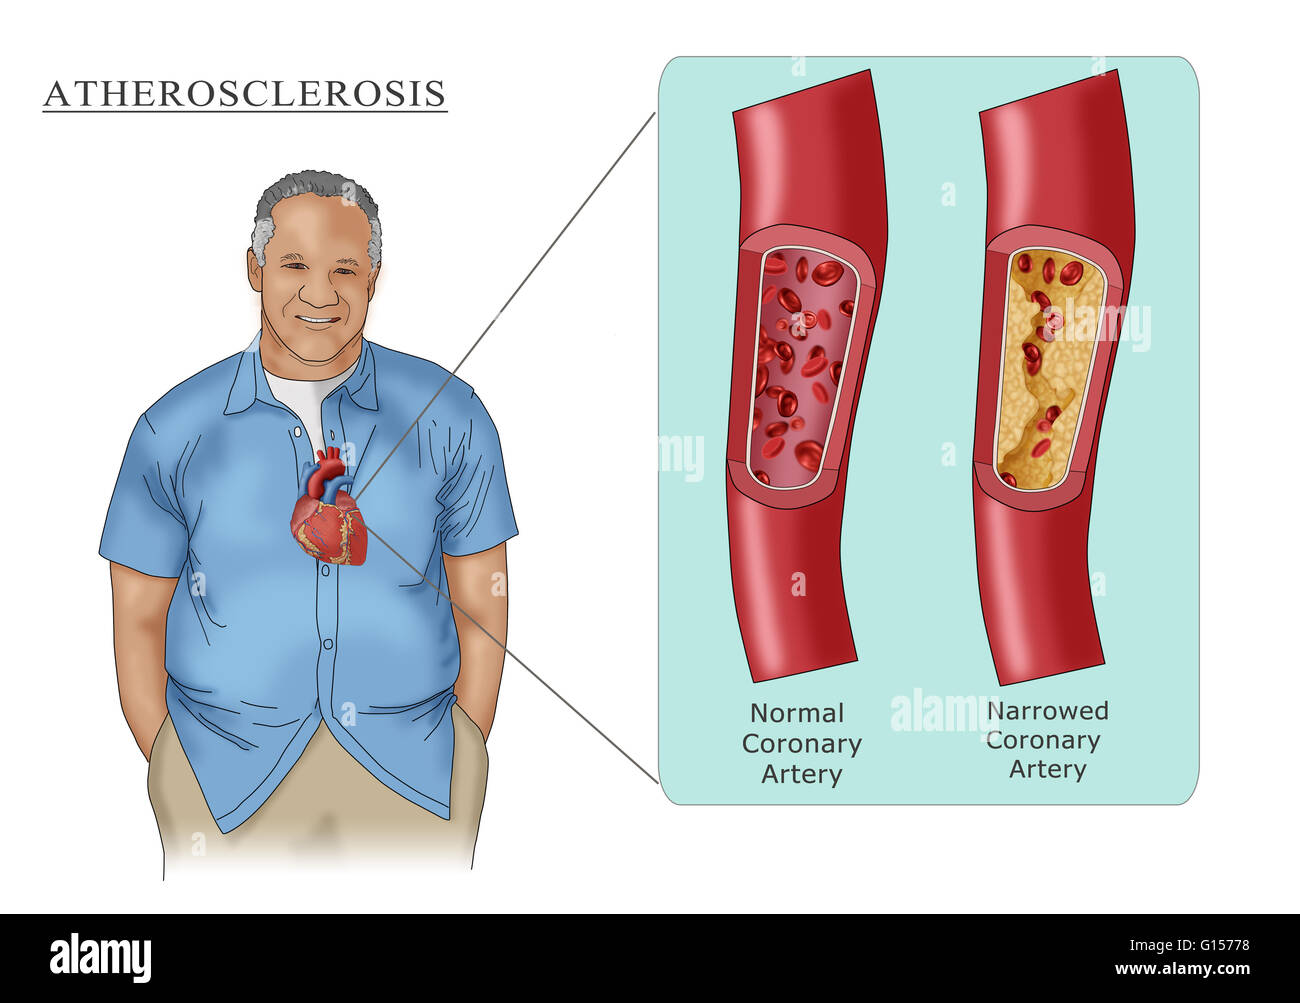 Illustrazione raffigurante un uomo con l'aterosclerosi, la limitazione del flusso di sangue attraverso l'arteria a causa di ostruzione della placca (riquadro destro). Per il confronto di una arteria normale è anche mostrato nel riquadro (sinistra). Foto Stock